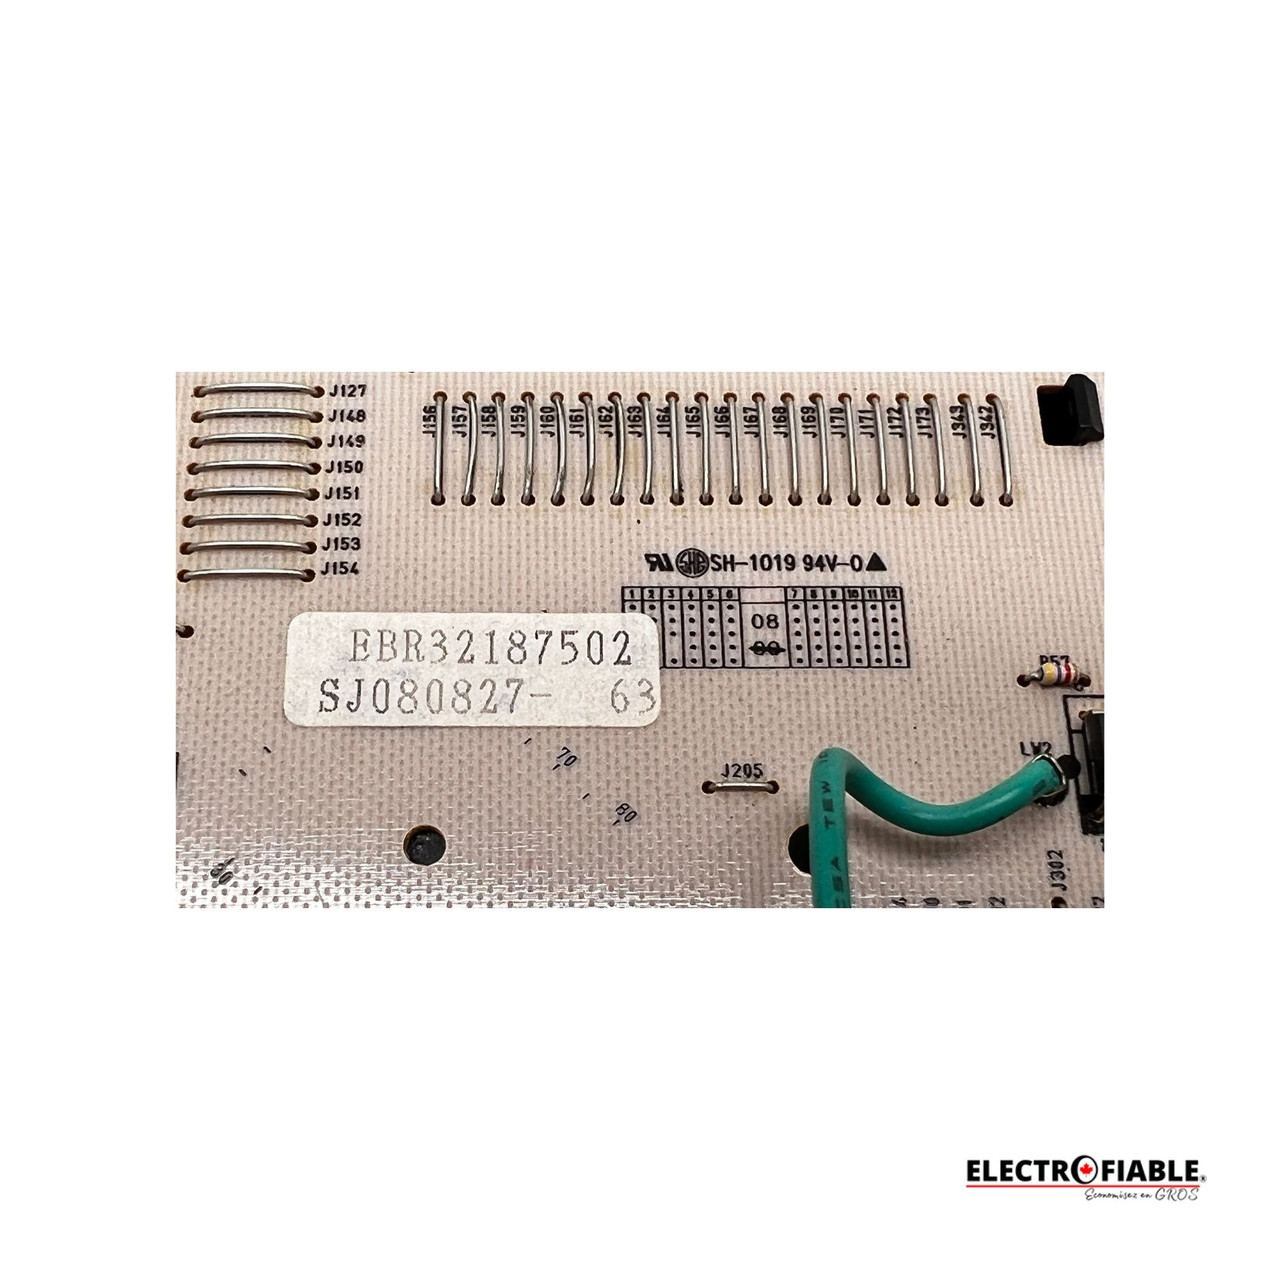 EBR32187502 Range Main Control Board